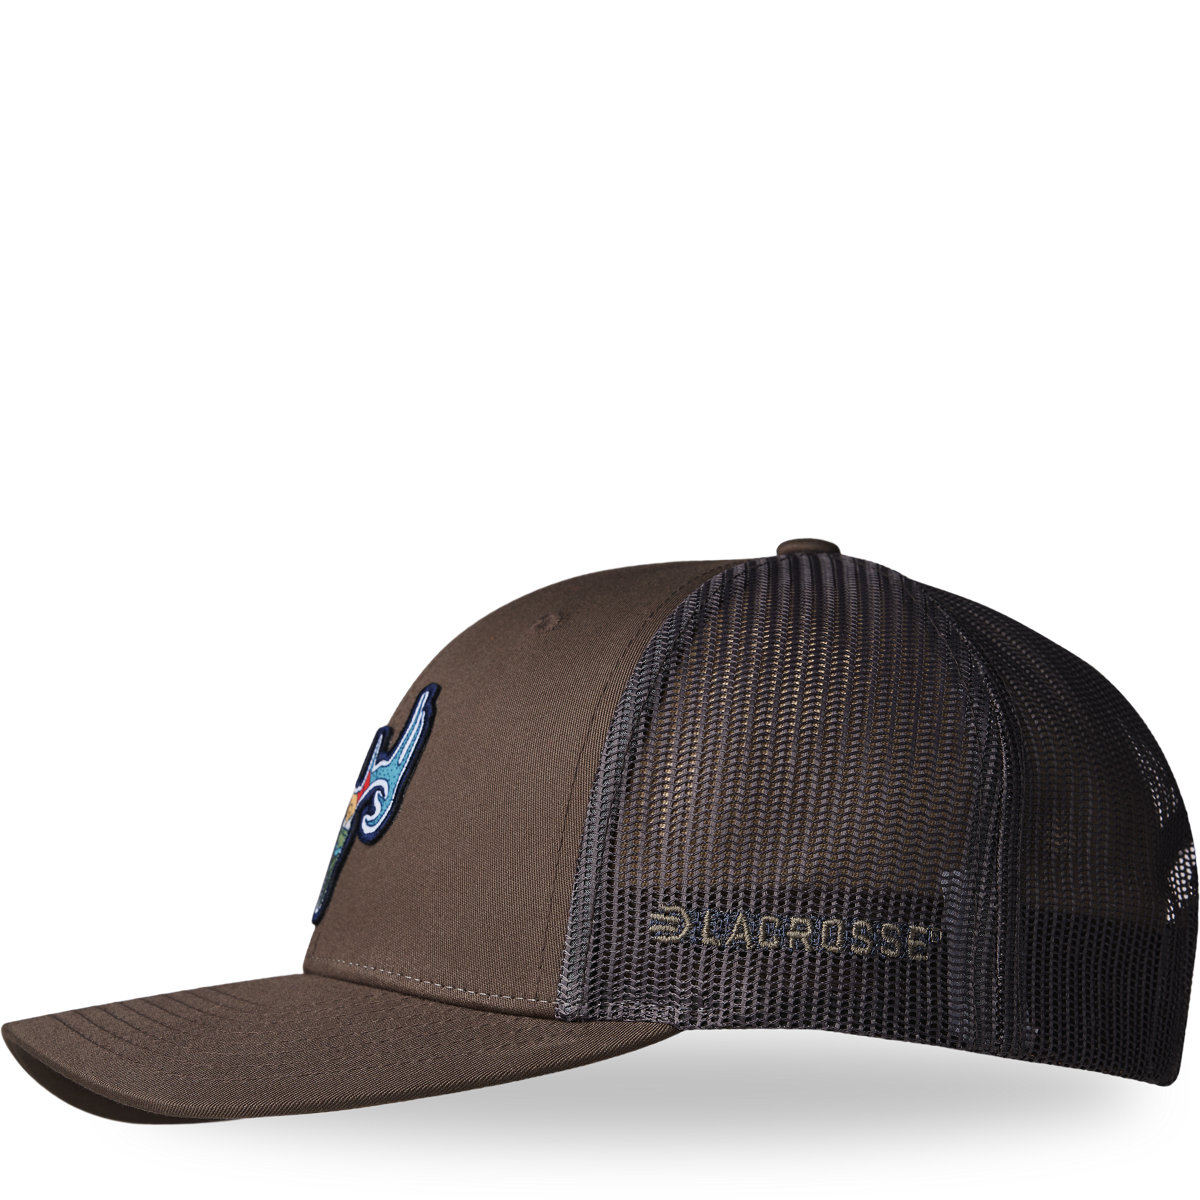 LaCrosse Footwear - LaCrosse Hat Choc - Chip/Grey Trucker Brown Deer